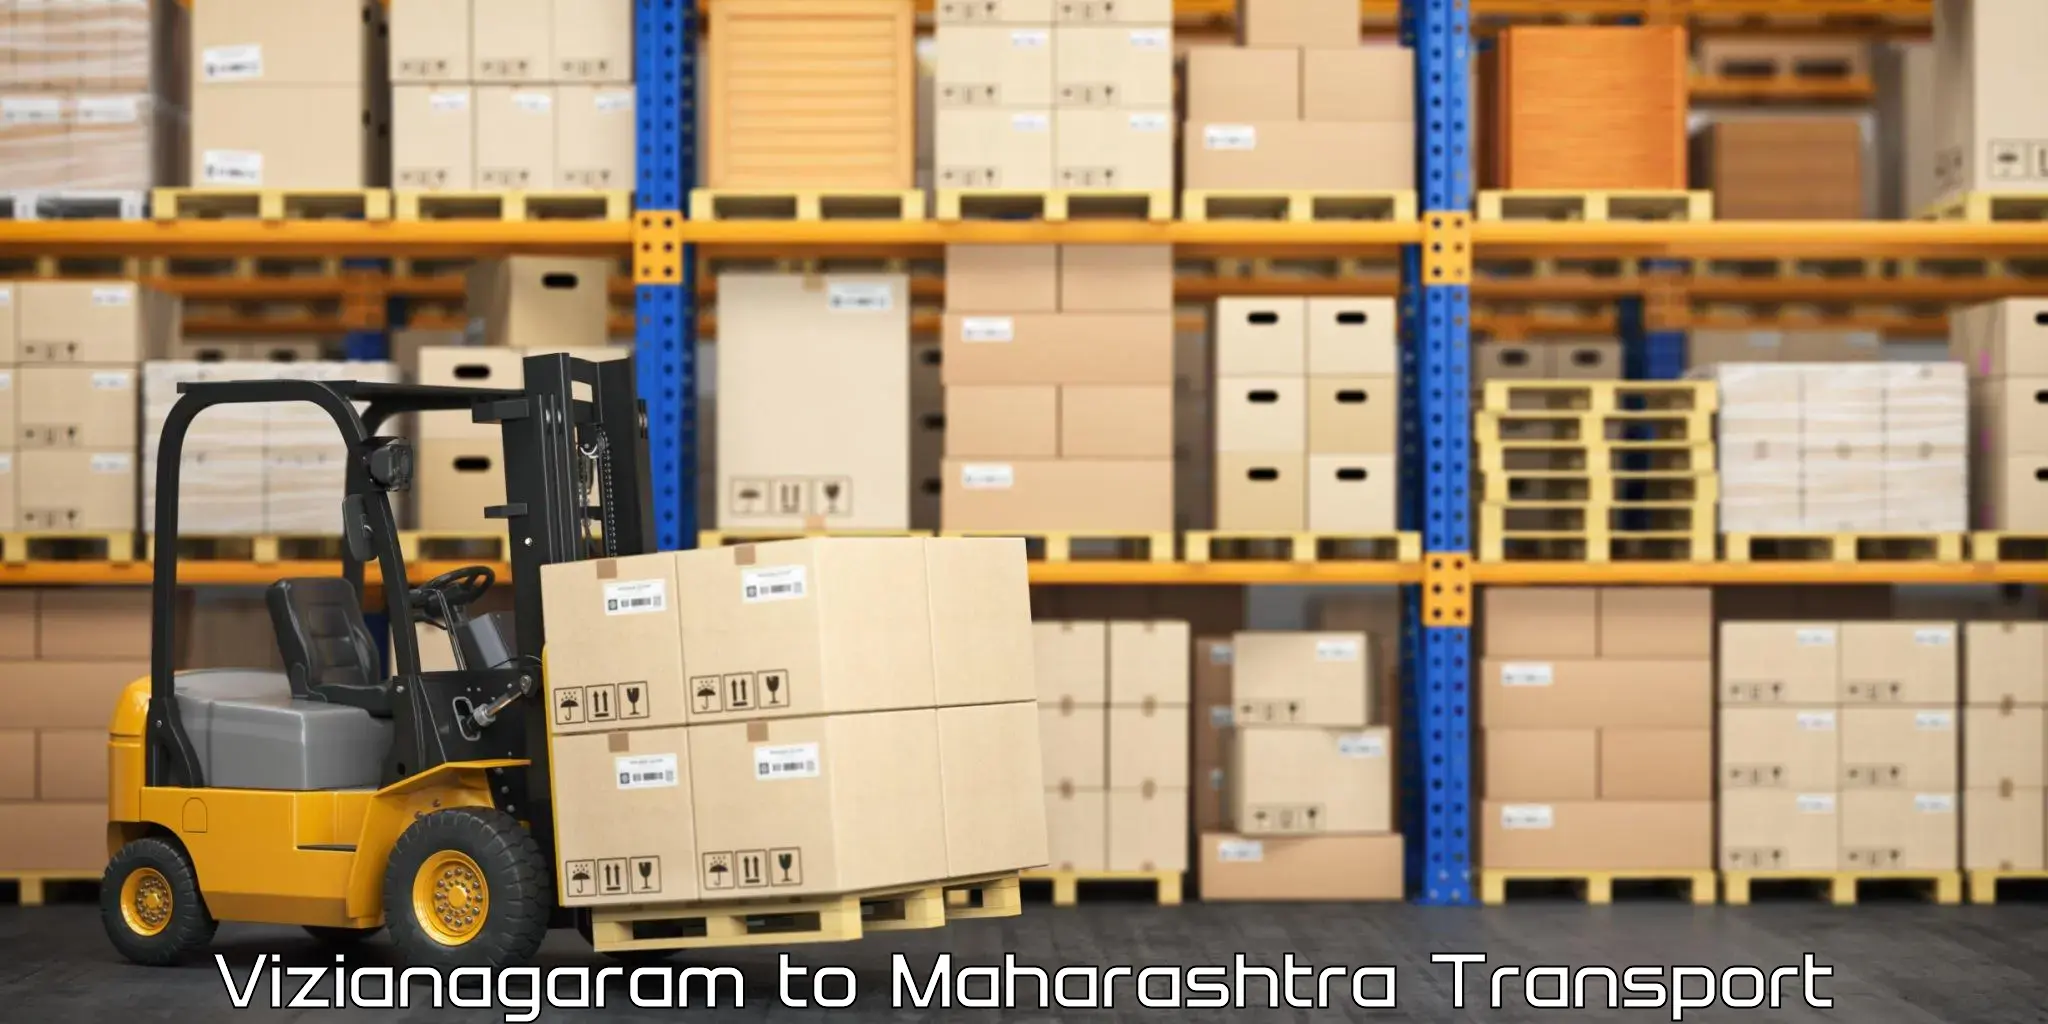 Luggage transport services Vizianagaram to Mangaon